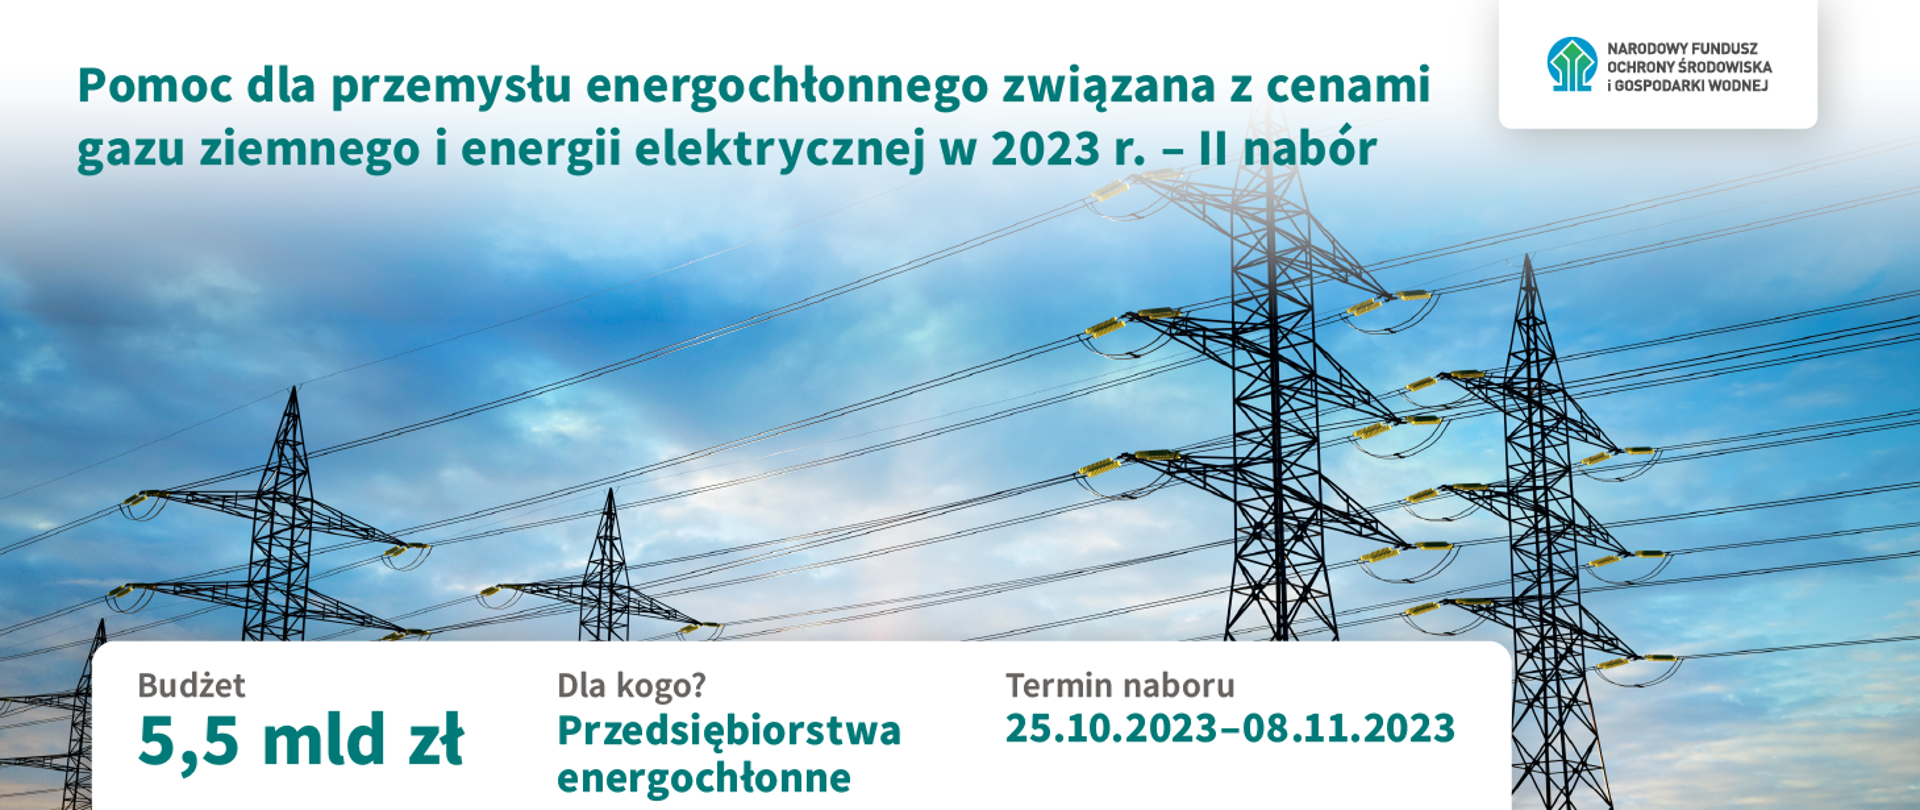 Plansza informacyjne, że NFOŚiGW przeznaczył Pomoc dla przemysłu energochłonnego związanego z cenami gazu o energii elektrycznej w 2023 r. - drugi nabór. Budżet 5,5 mld zł dla przedsiębiorstw energochłonnych. Termin naboru 25.10.2023-8.11.2023